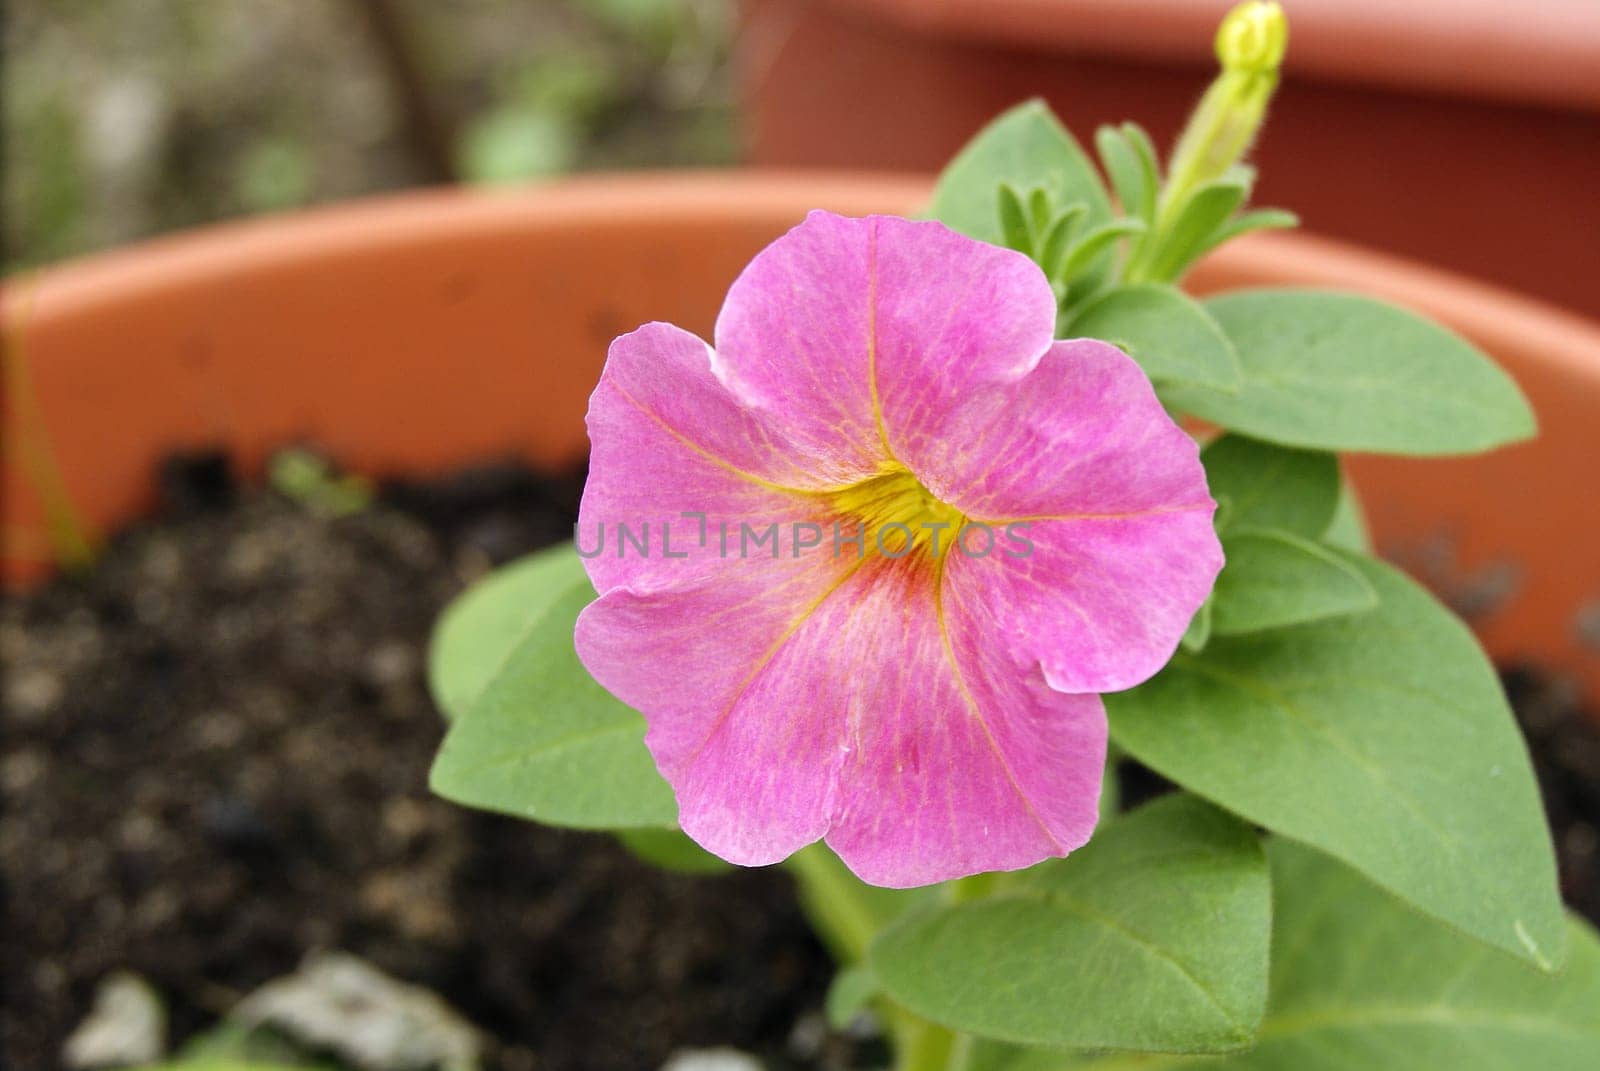 Pink petunia in bloom. Petunia flowers in a garden pot